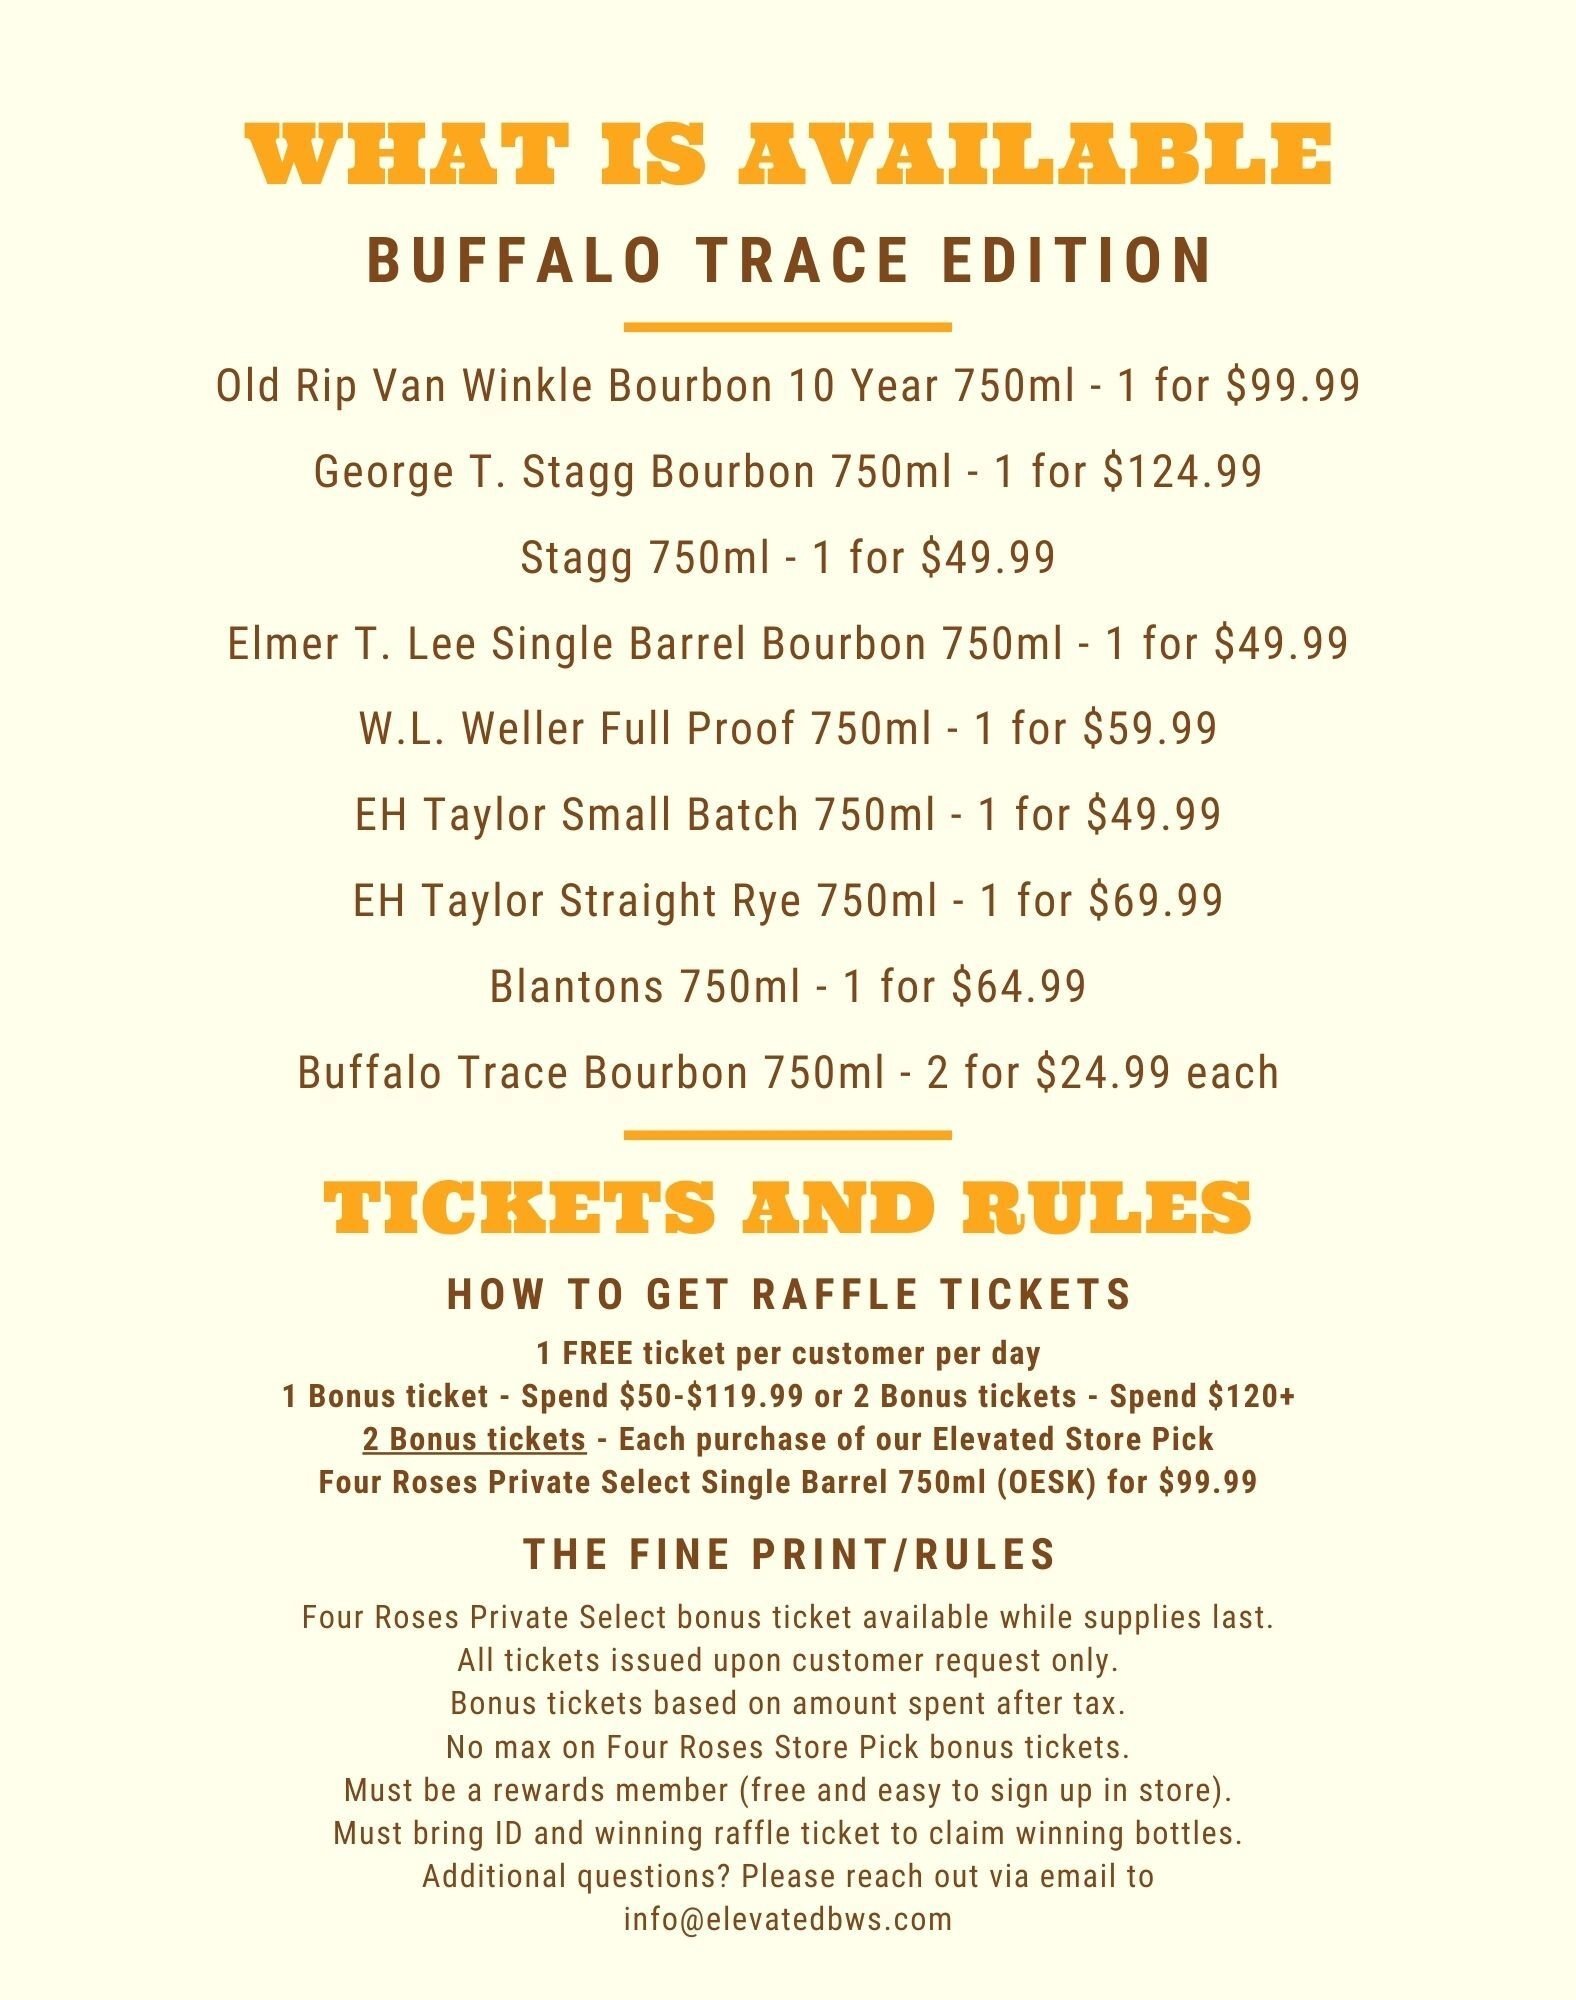 Buffalo Trace items